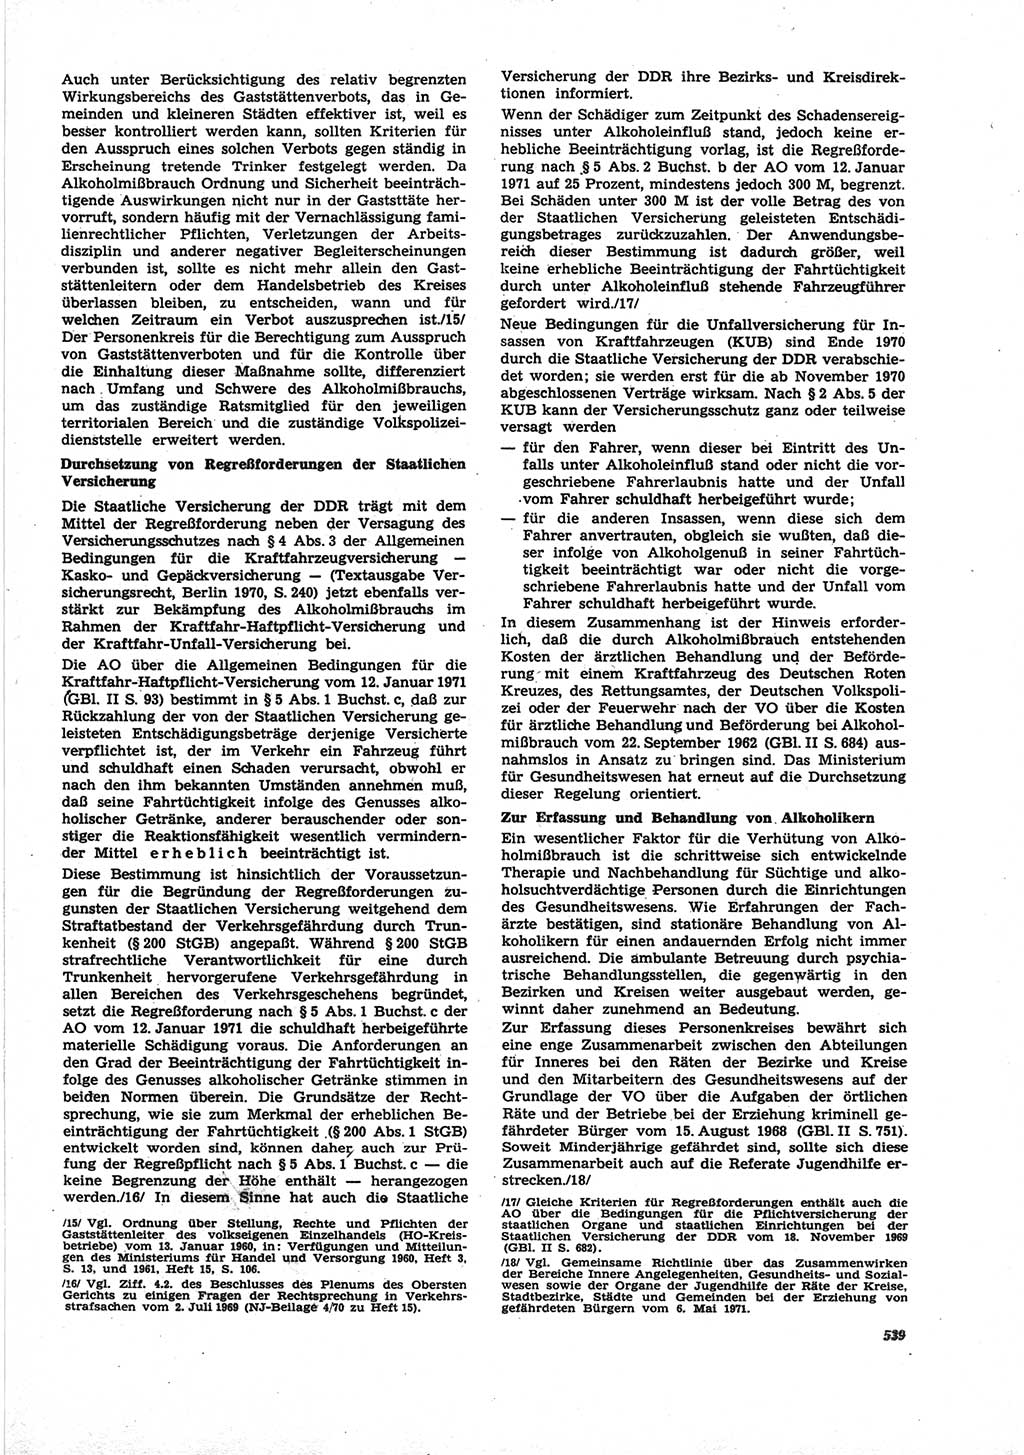 Neue Justiz (NJ), Zeitschrift für Recht und Rechtswissenschaft [Deutsche Demokratische Republik (DDR)], 25. Jahrgang 1971, Seite 539 (NJ DDR 1971, S. 539)